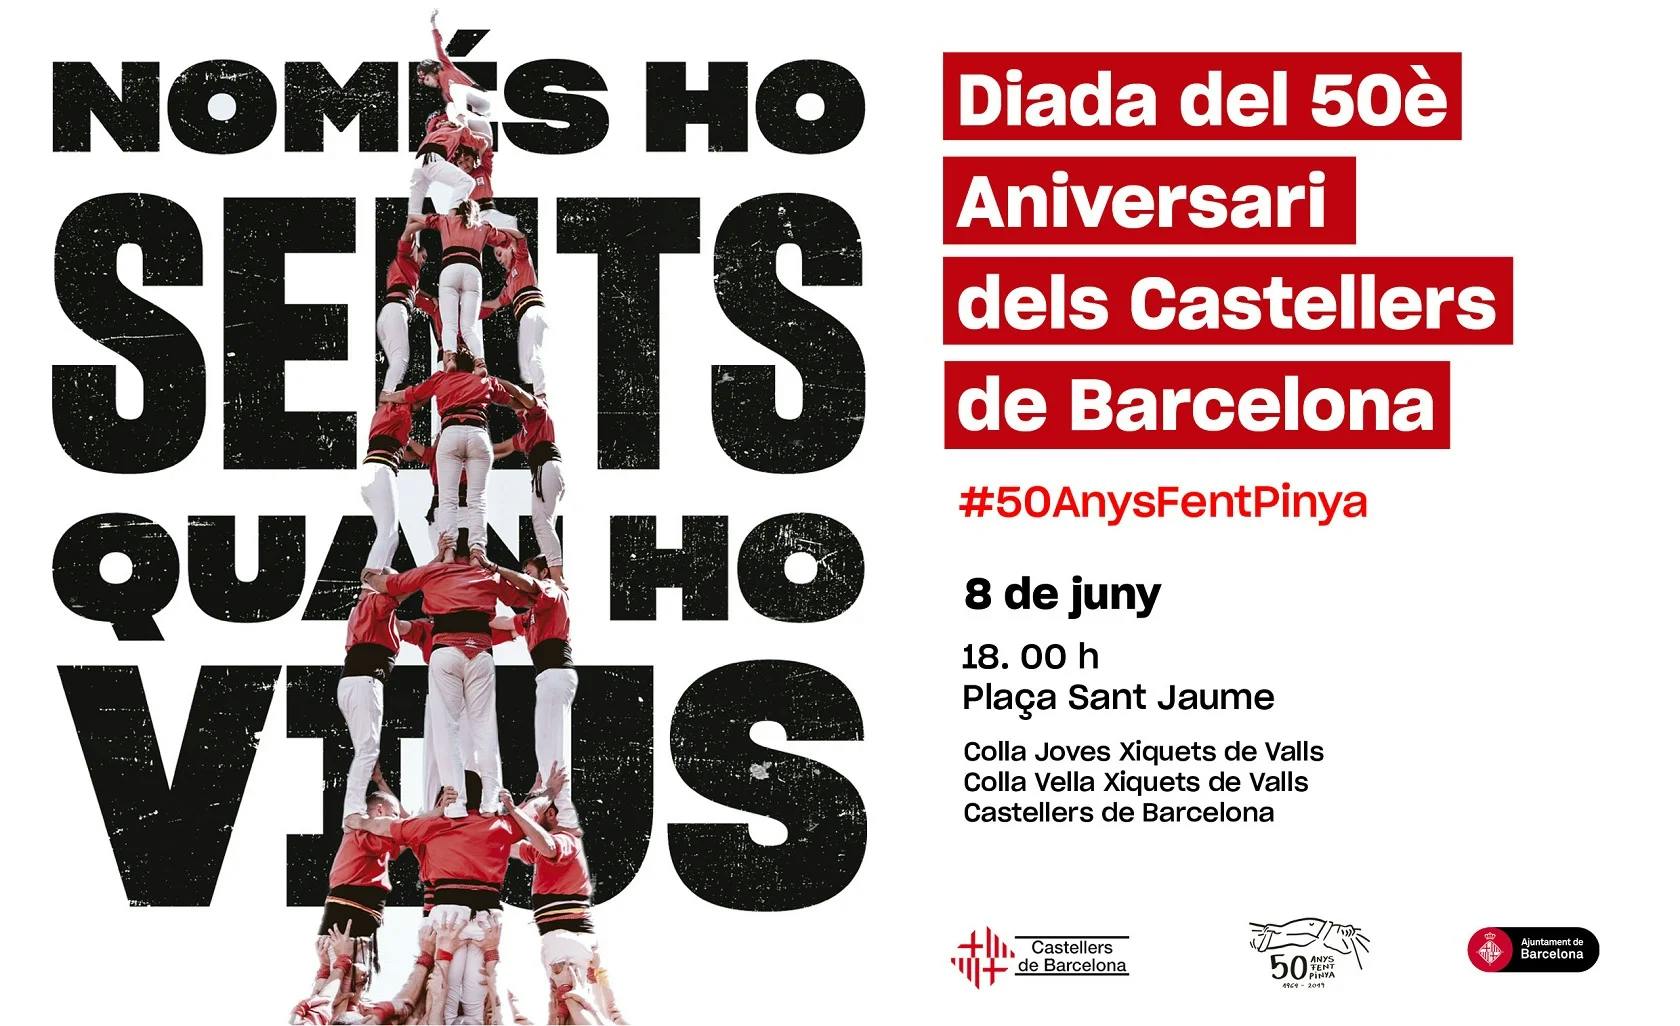 Cartell de la diada del 50è Aniversari dels Castellers de Barcelona